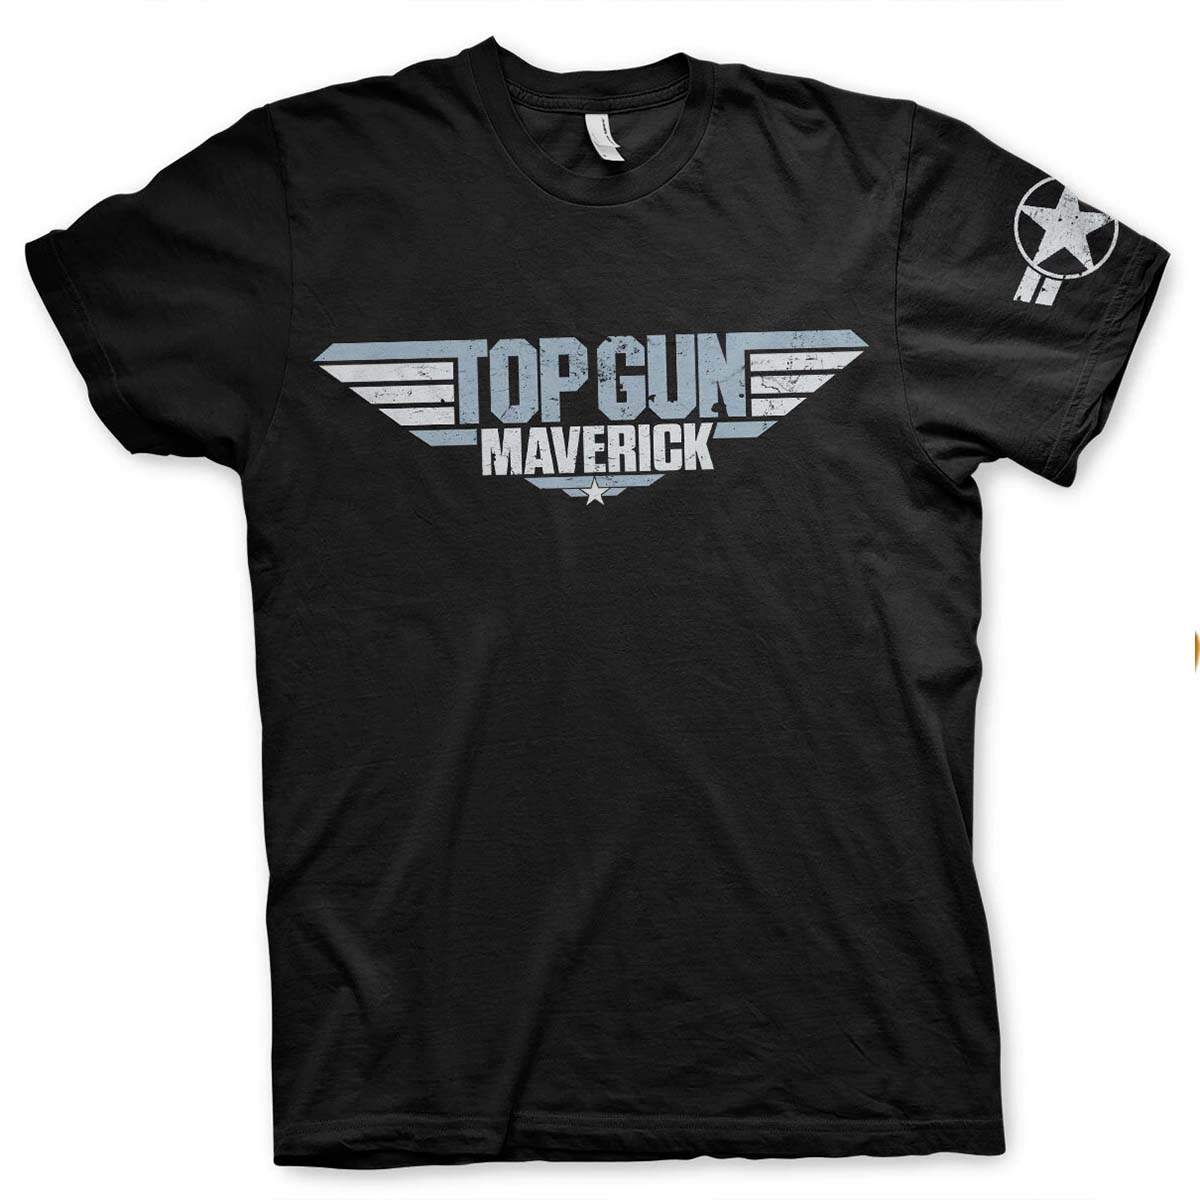 T-shirt, Top Gun Maverick XXL